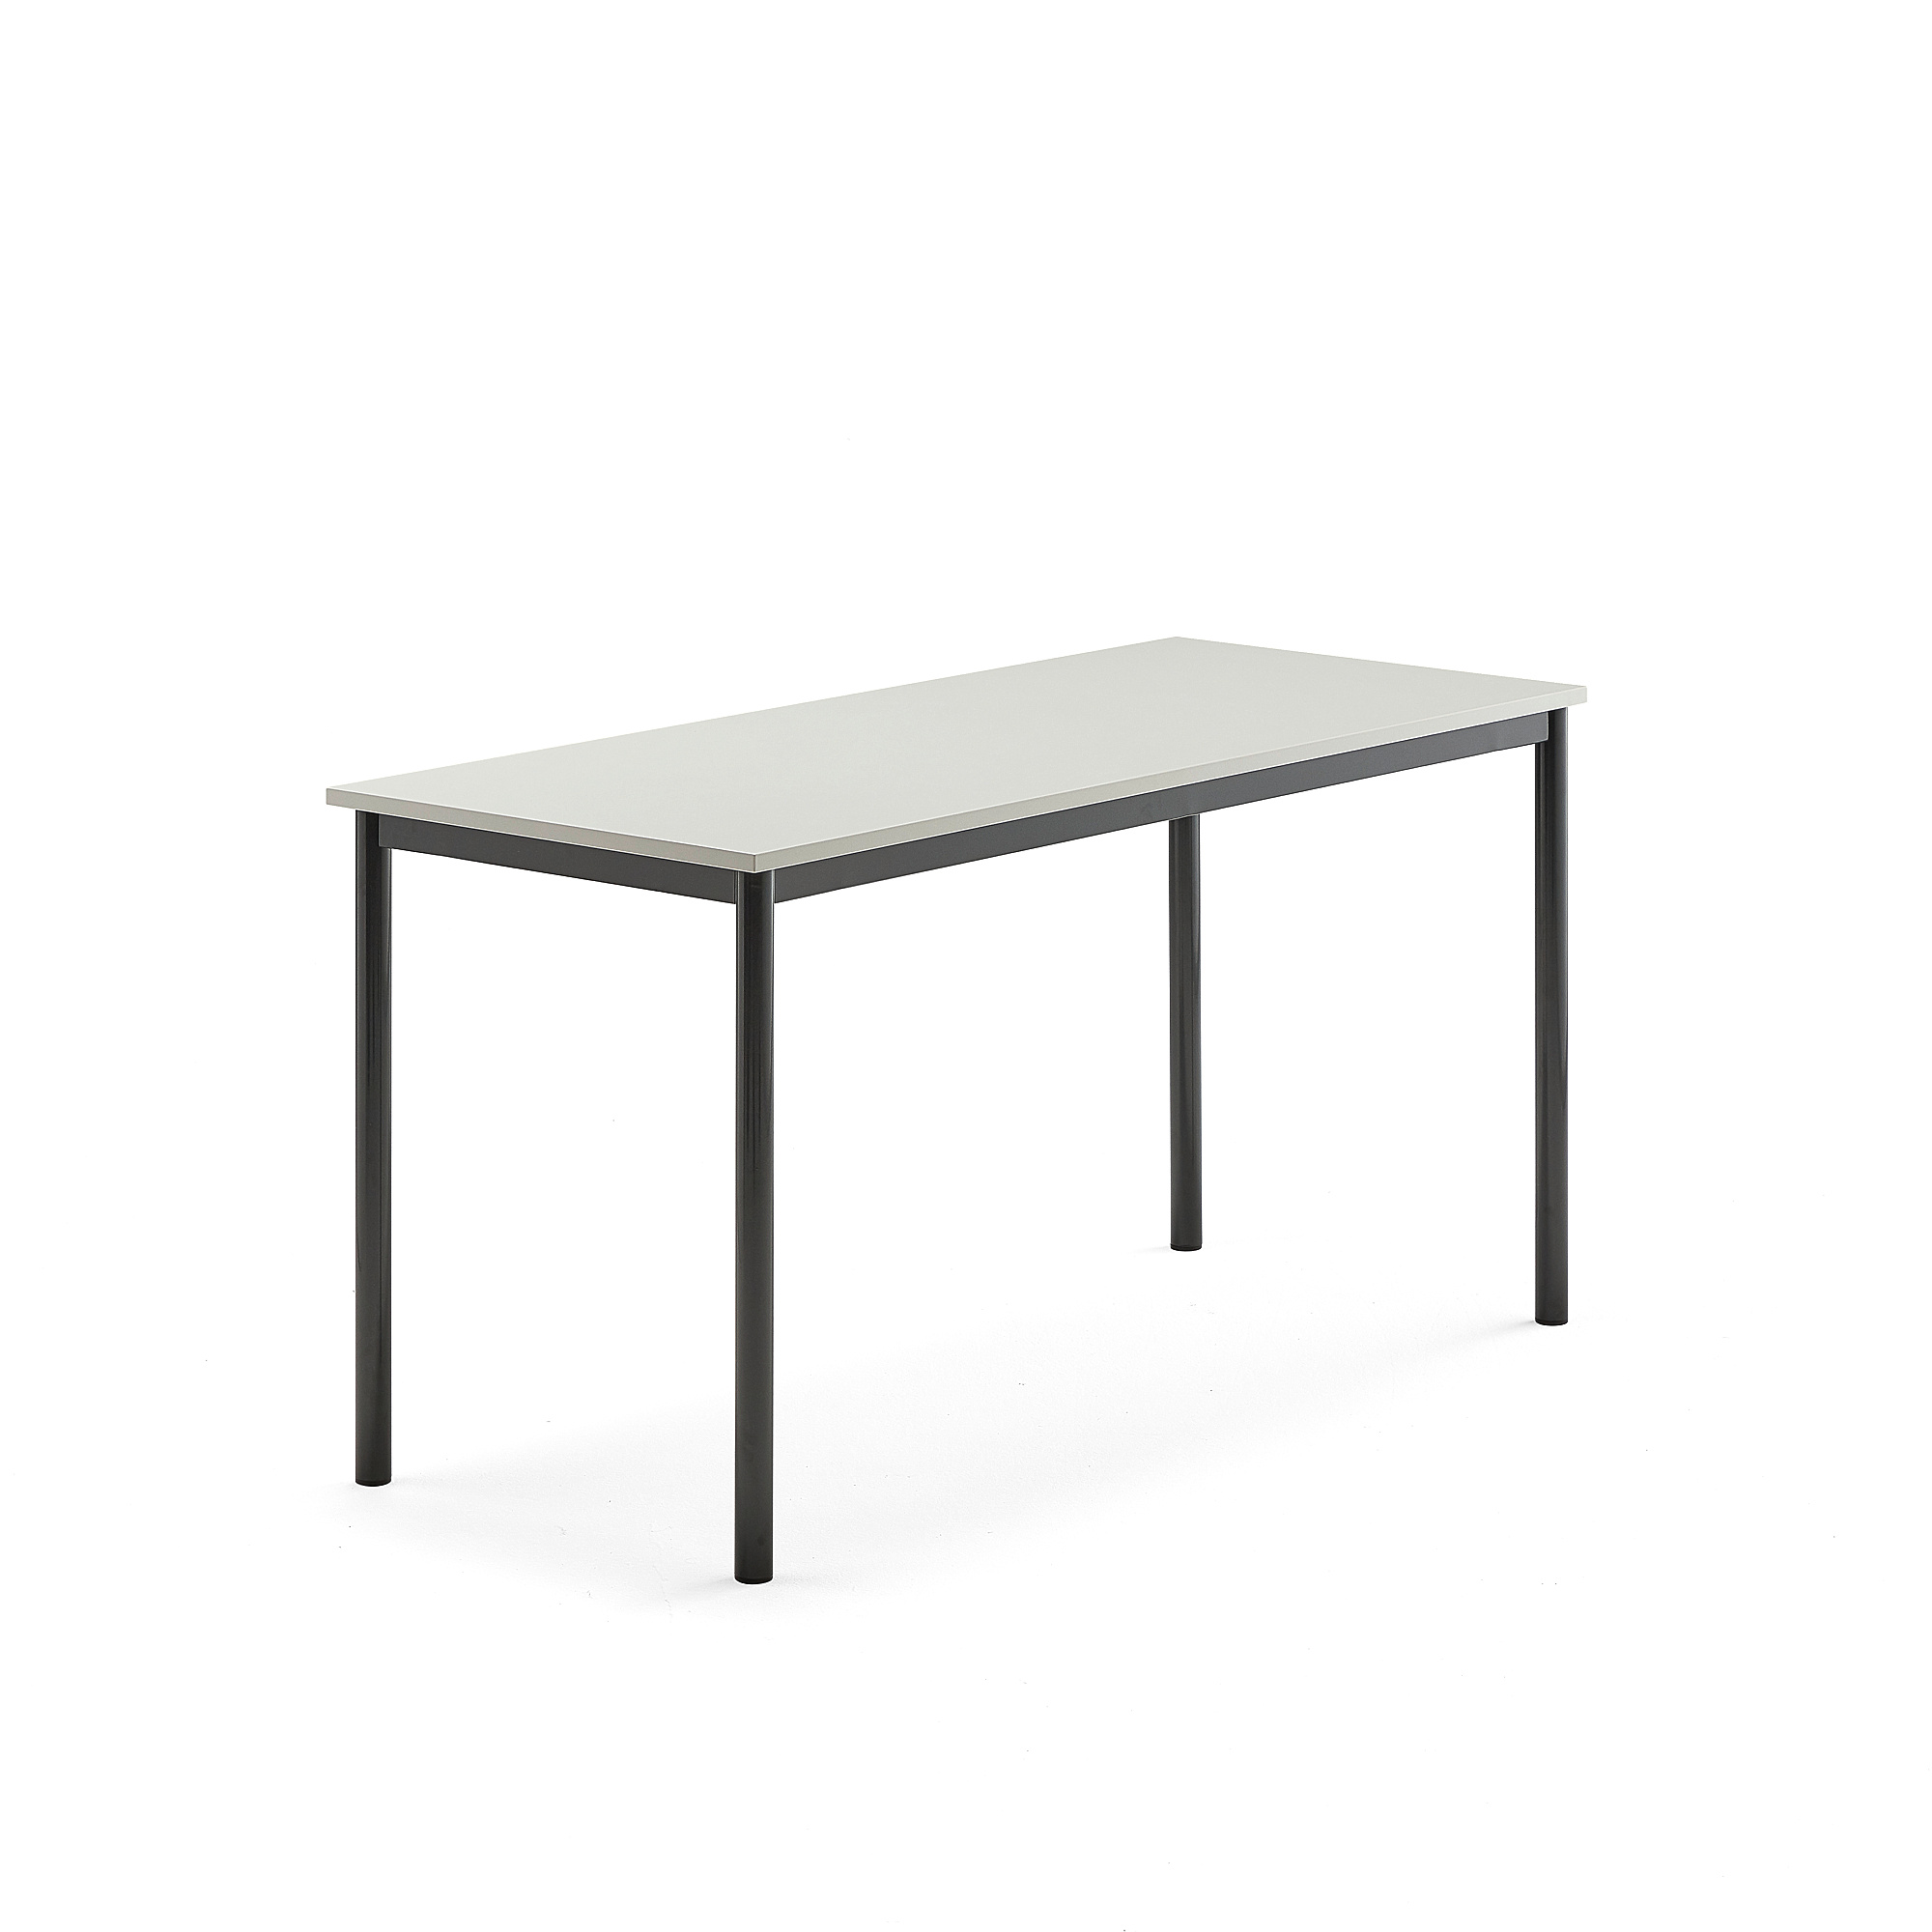 Stůl SONITUS, 1400x600x720 mm, antracitově šedé nohy, HPL deska tlumící hluk, šedá